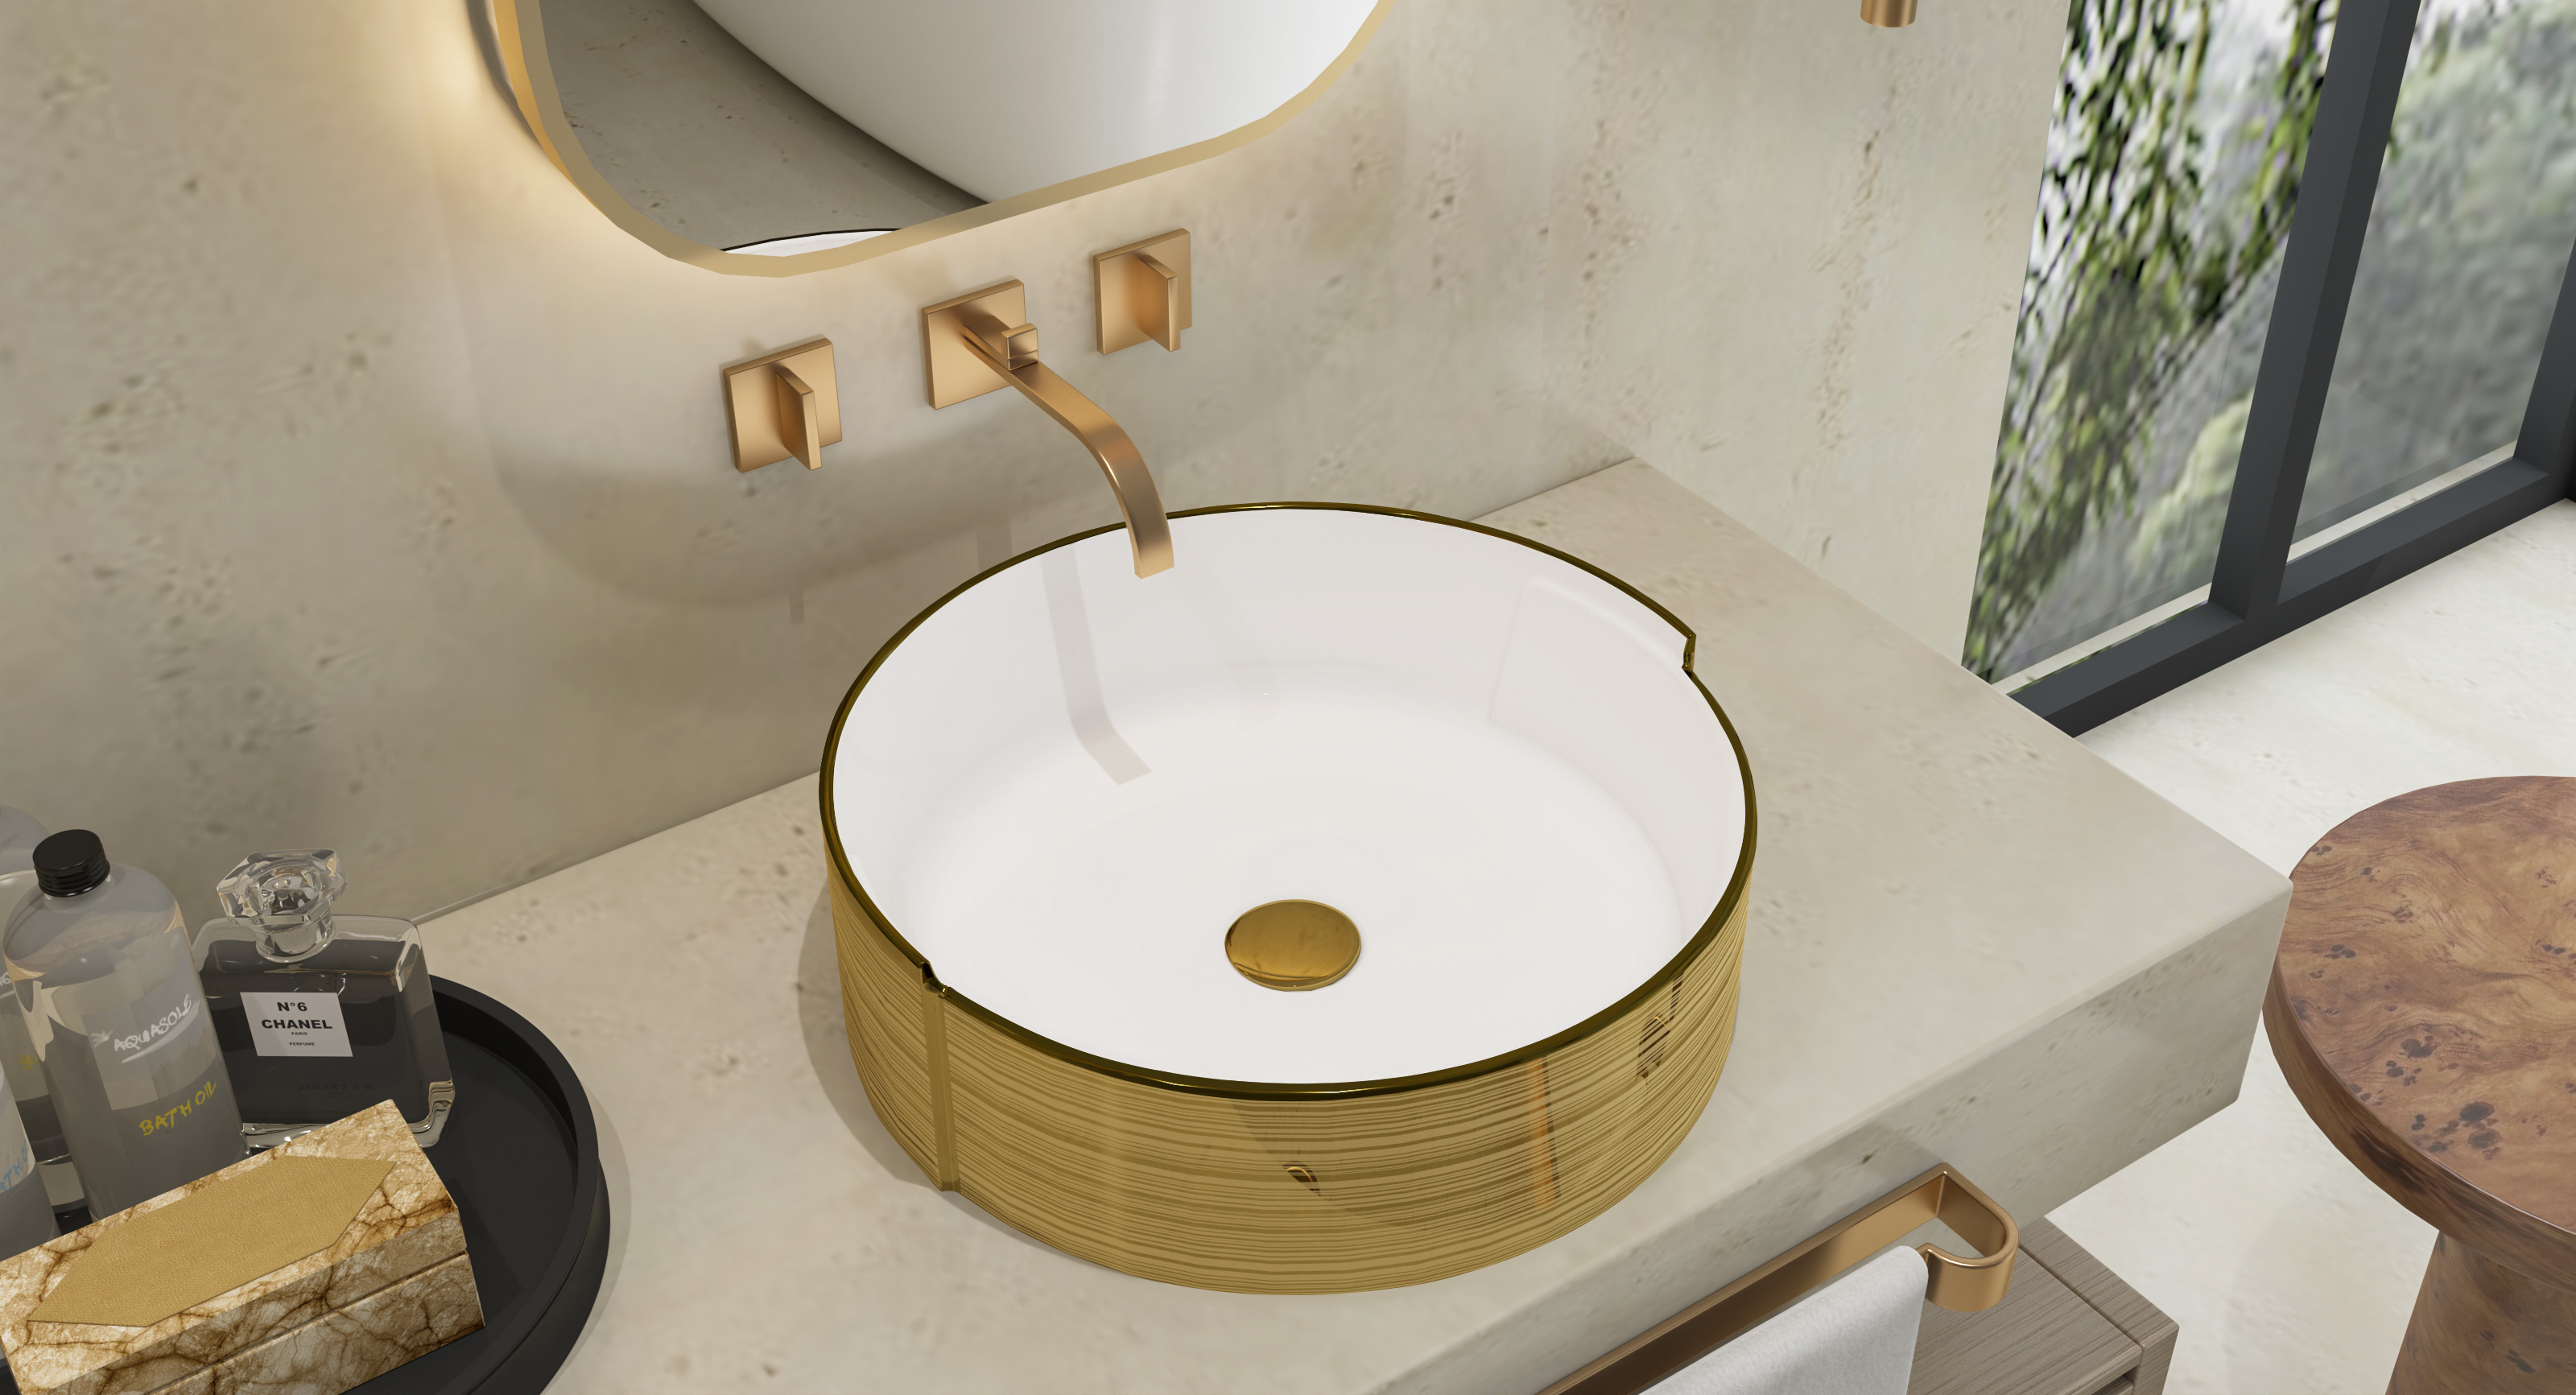 MEJE Lavabo artístico redondo con rayas doradas de lujo de 16,75 pulgadas, fregadero sobre encimera de baño, fregadero de cerámica de porcelana (incluye desagüe emergente)